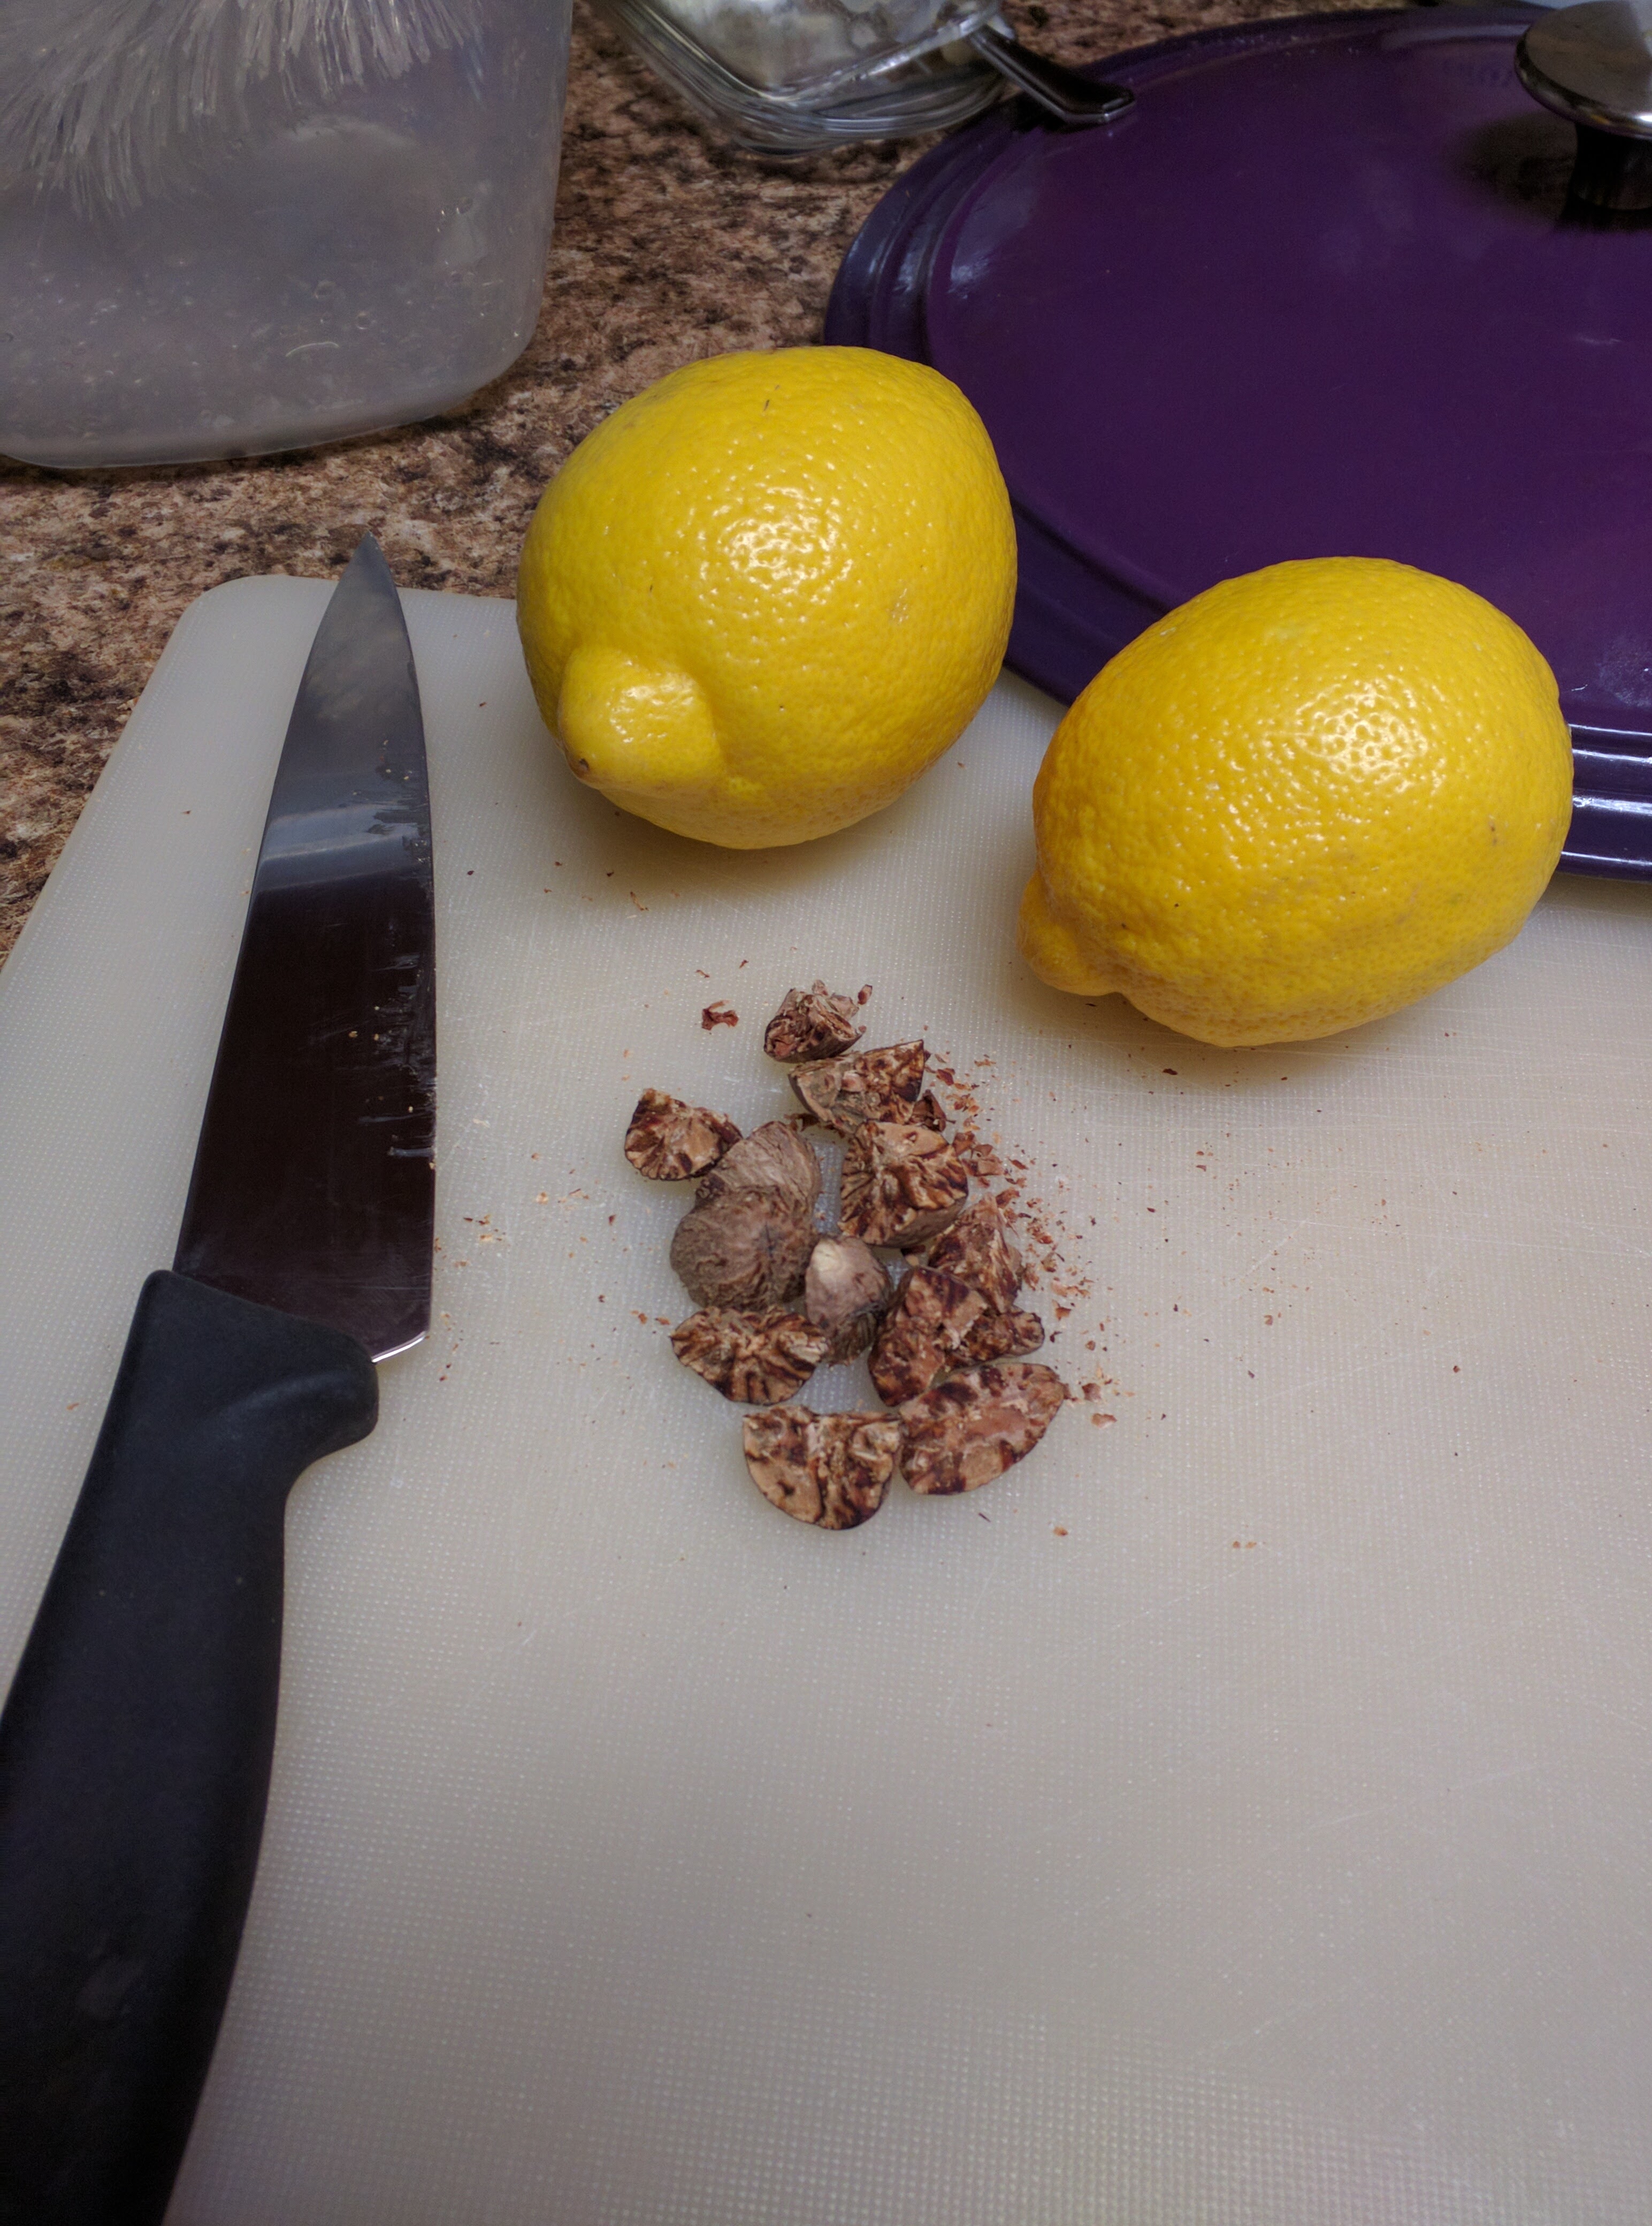 Lemons and nutmegs awaiting honey